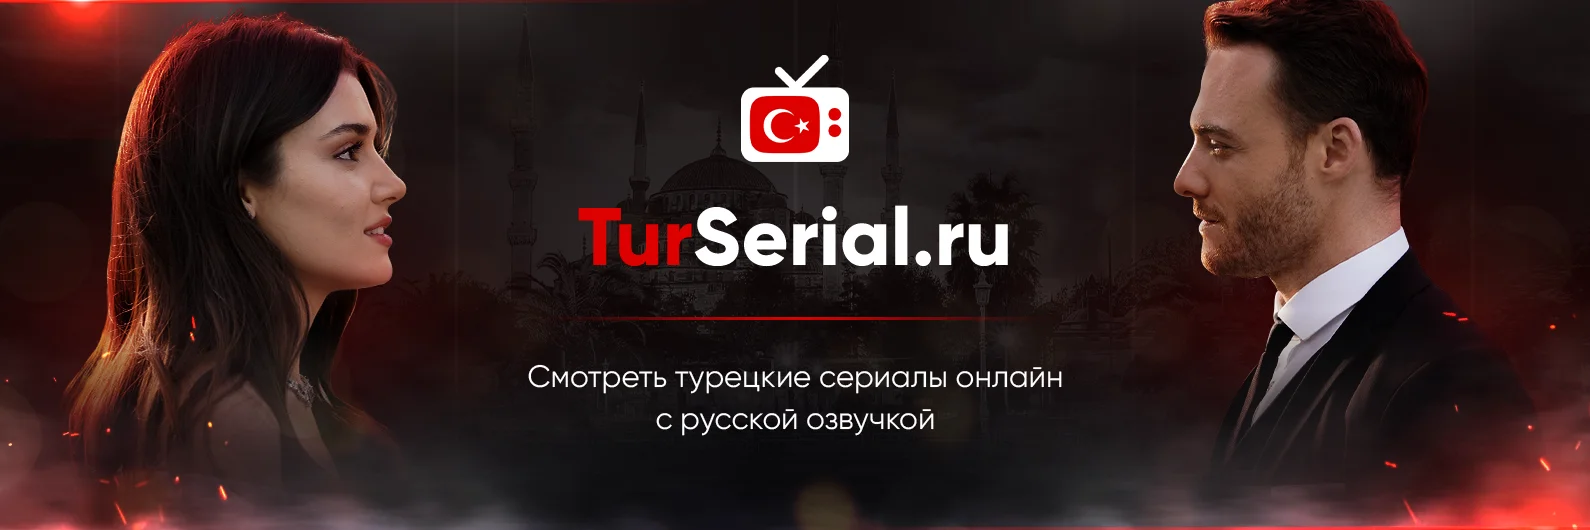 О сайте TurSerial.ru